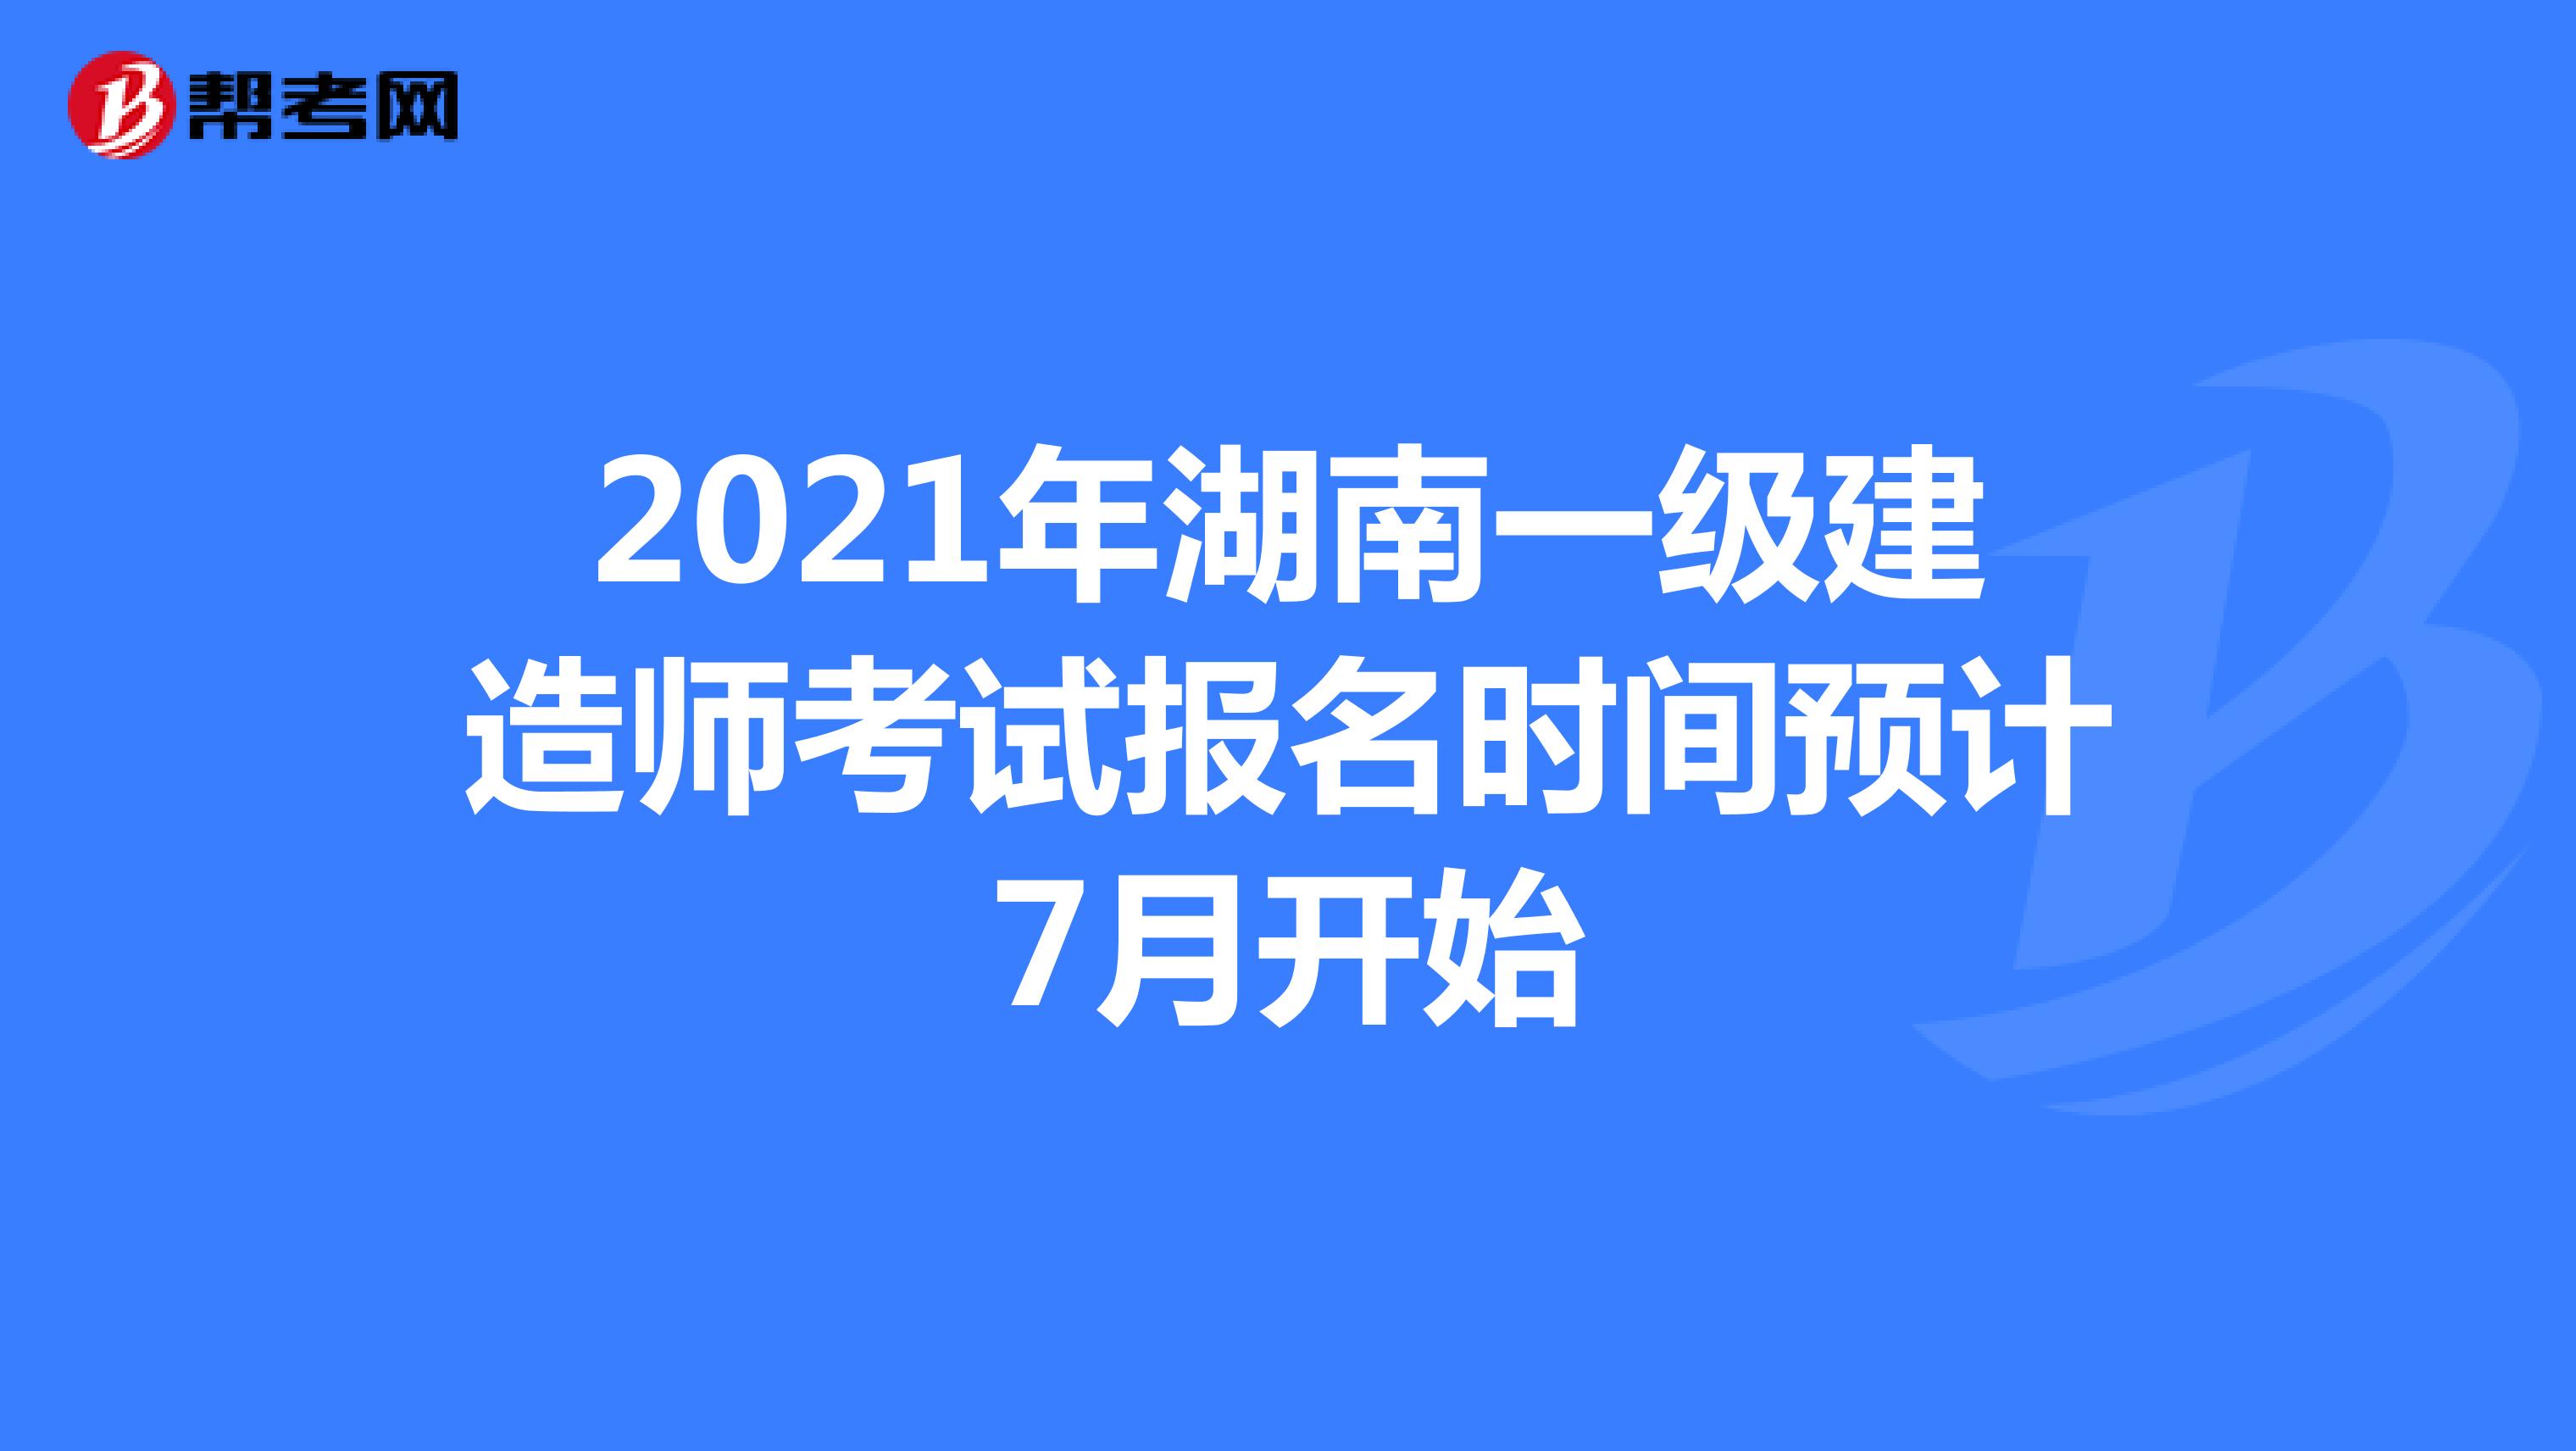 2021年湖南一级建造师考试报名时间预计7月开始